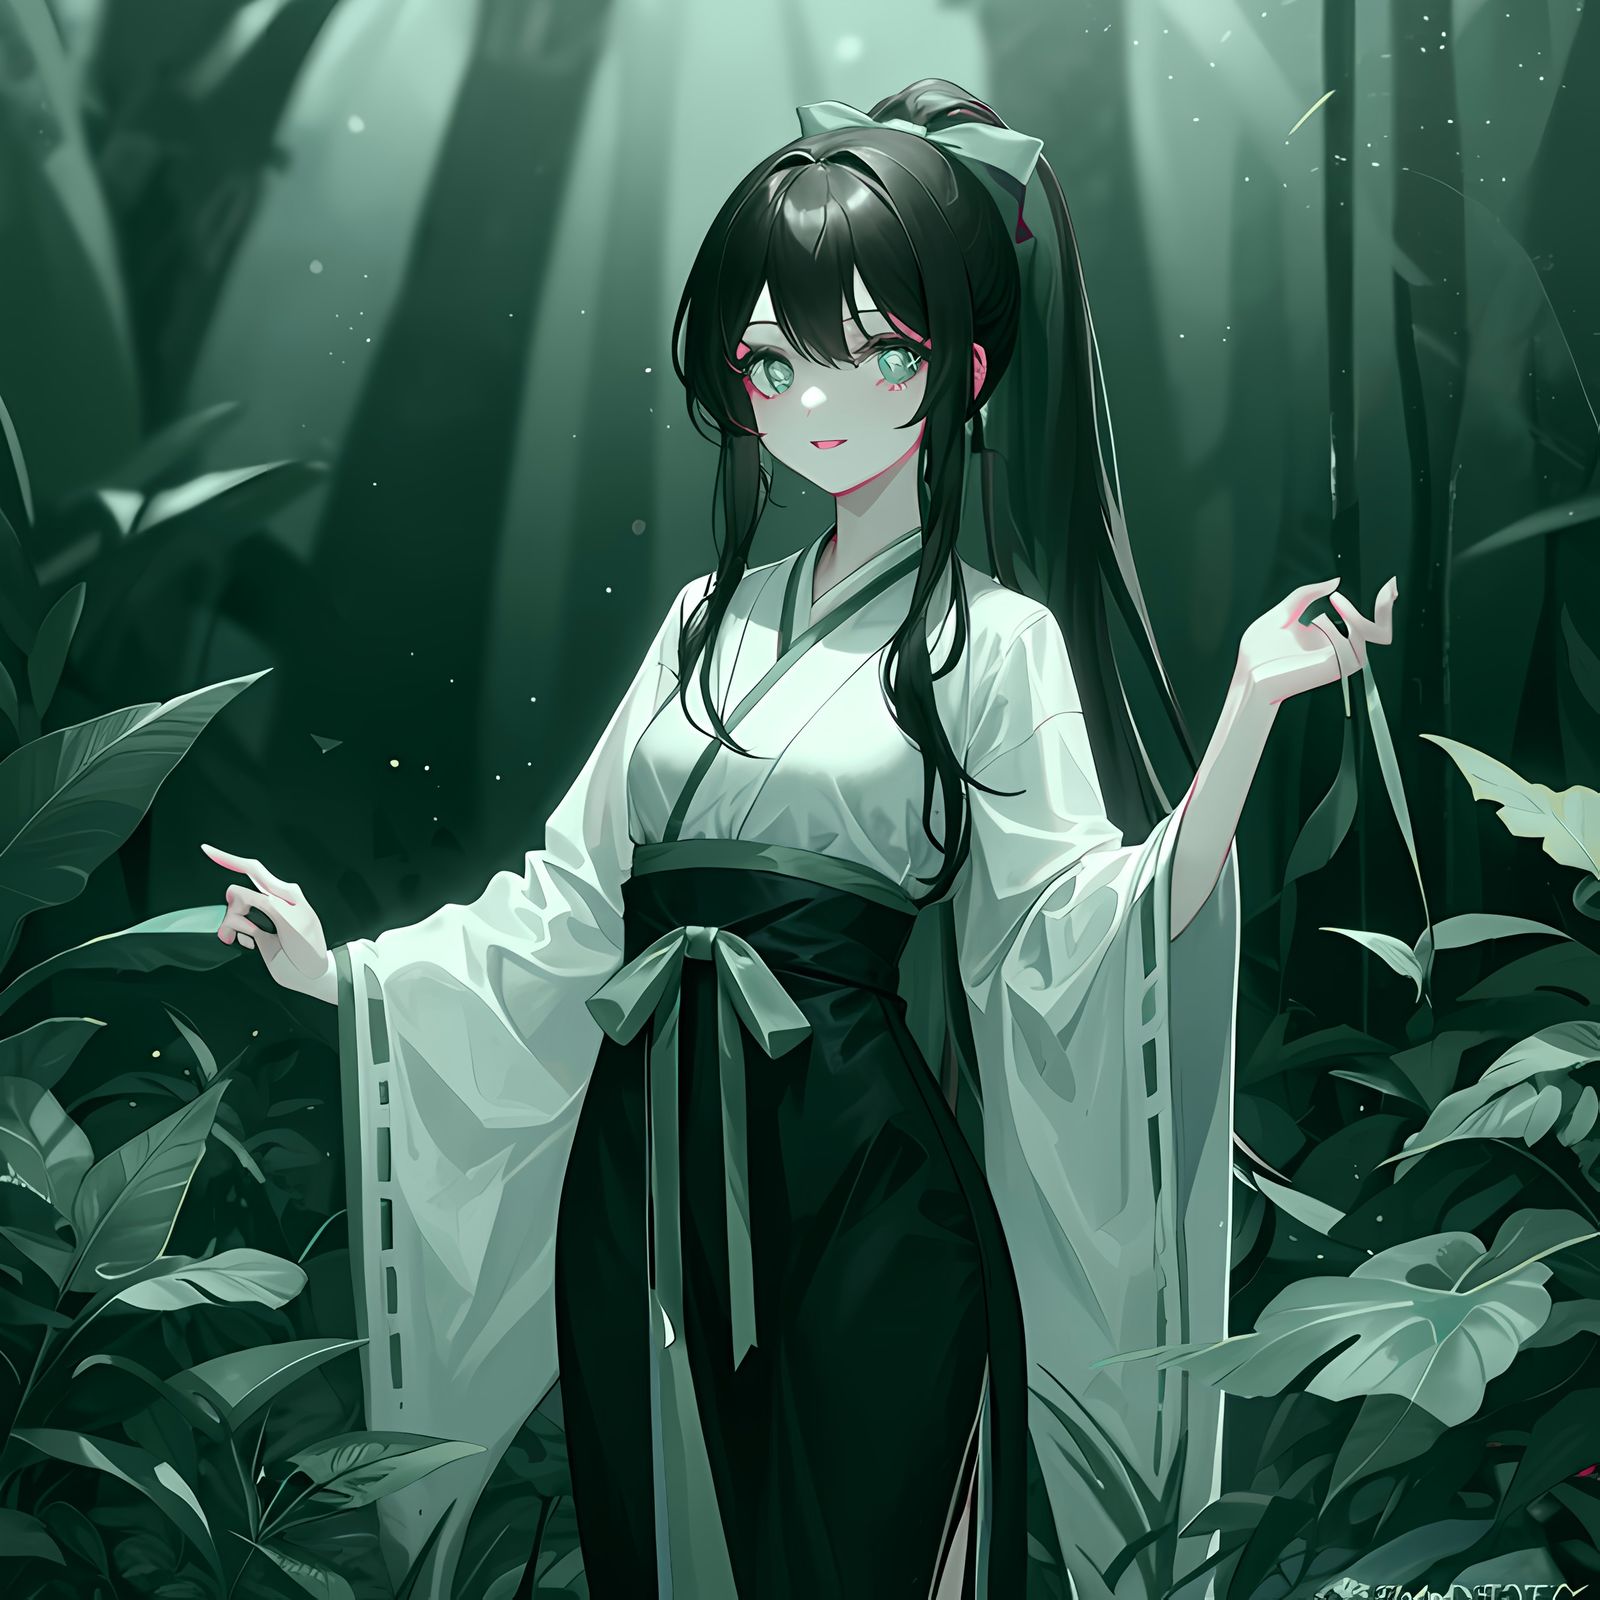 婀娜多姿一女子于竹林中静享盛夏芳华插画图片壁纸